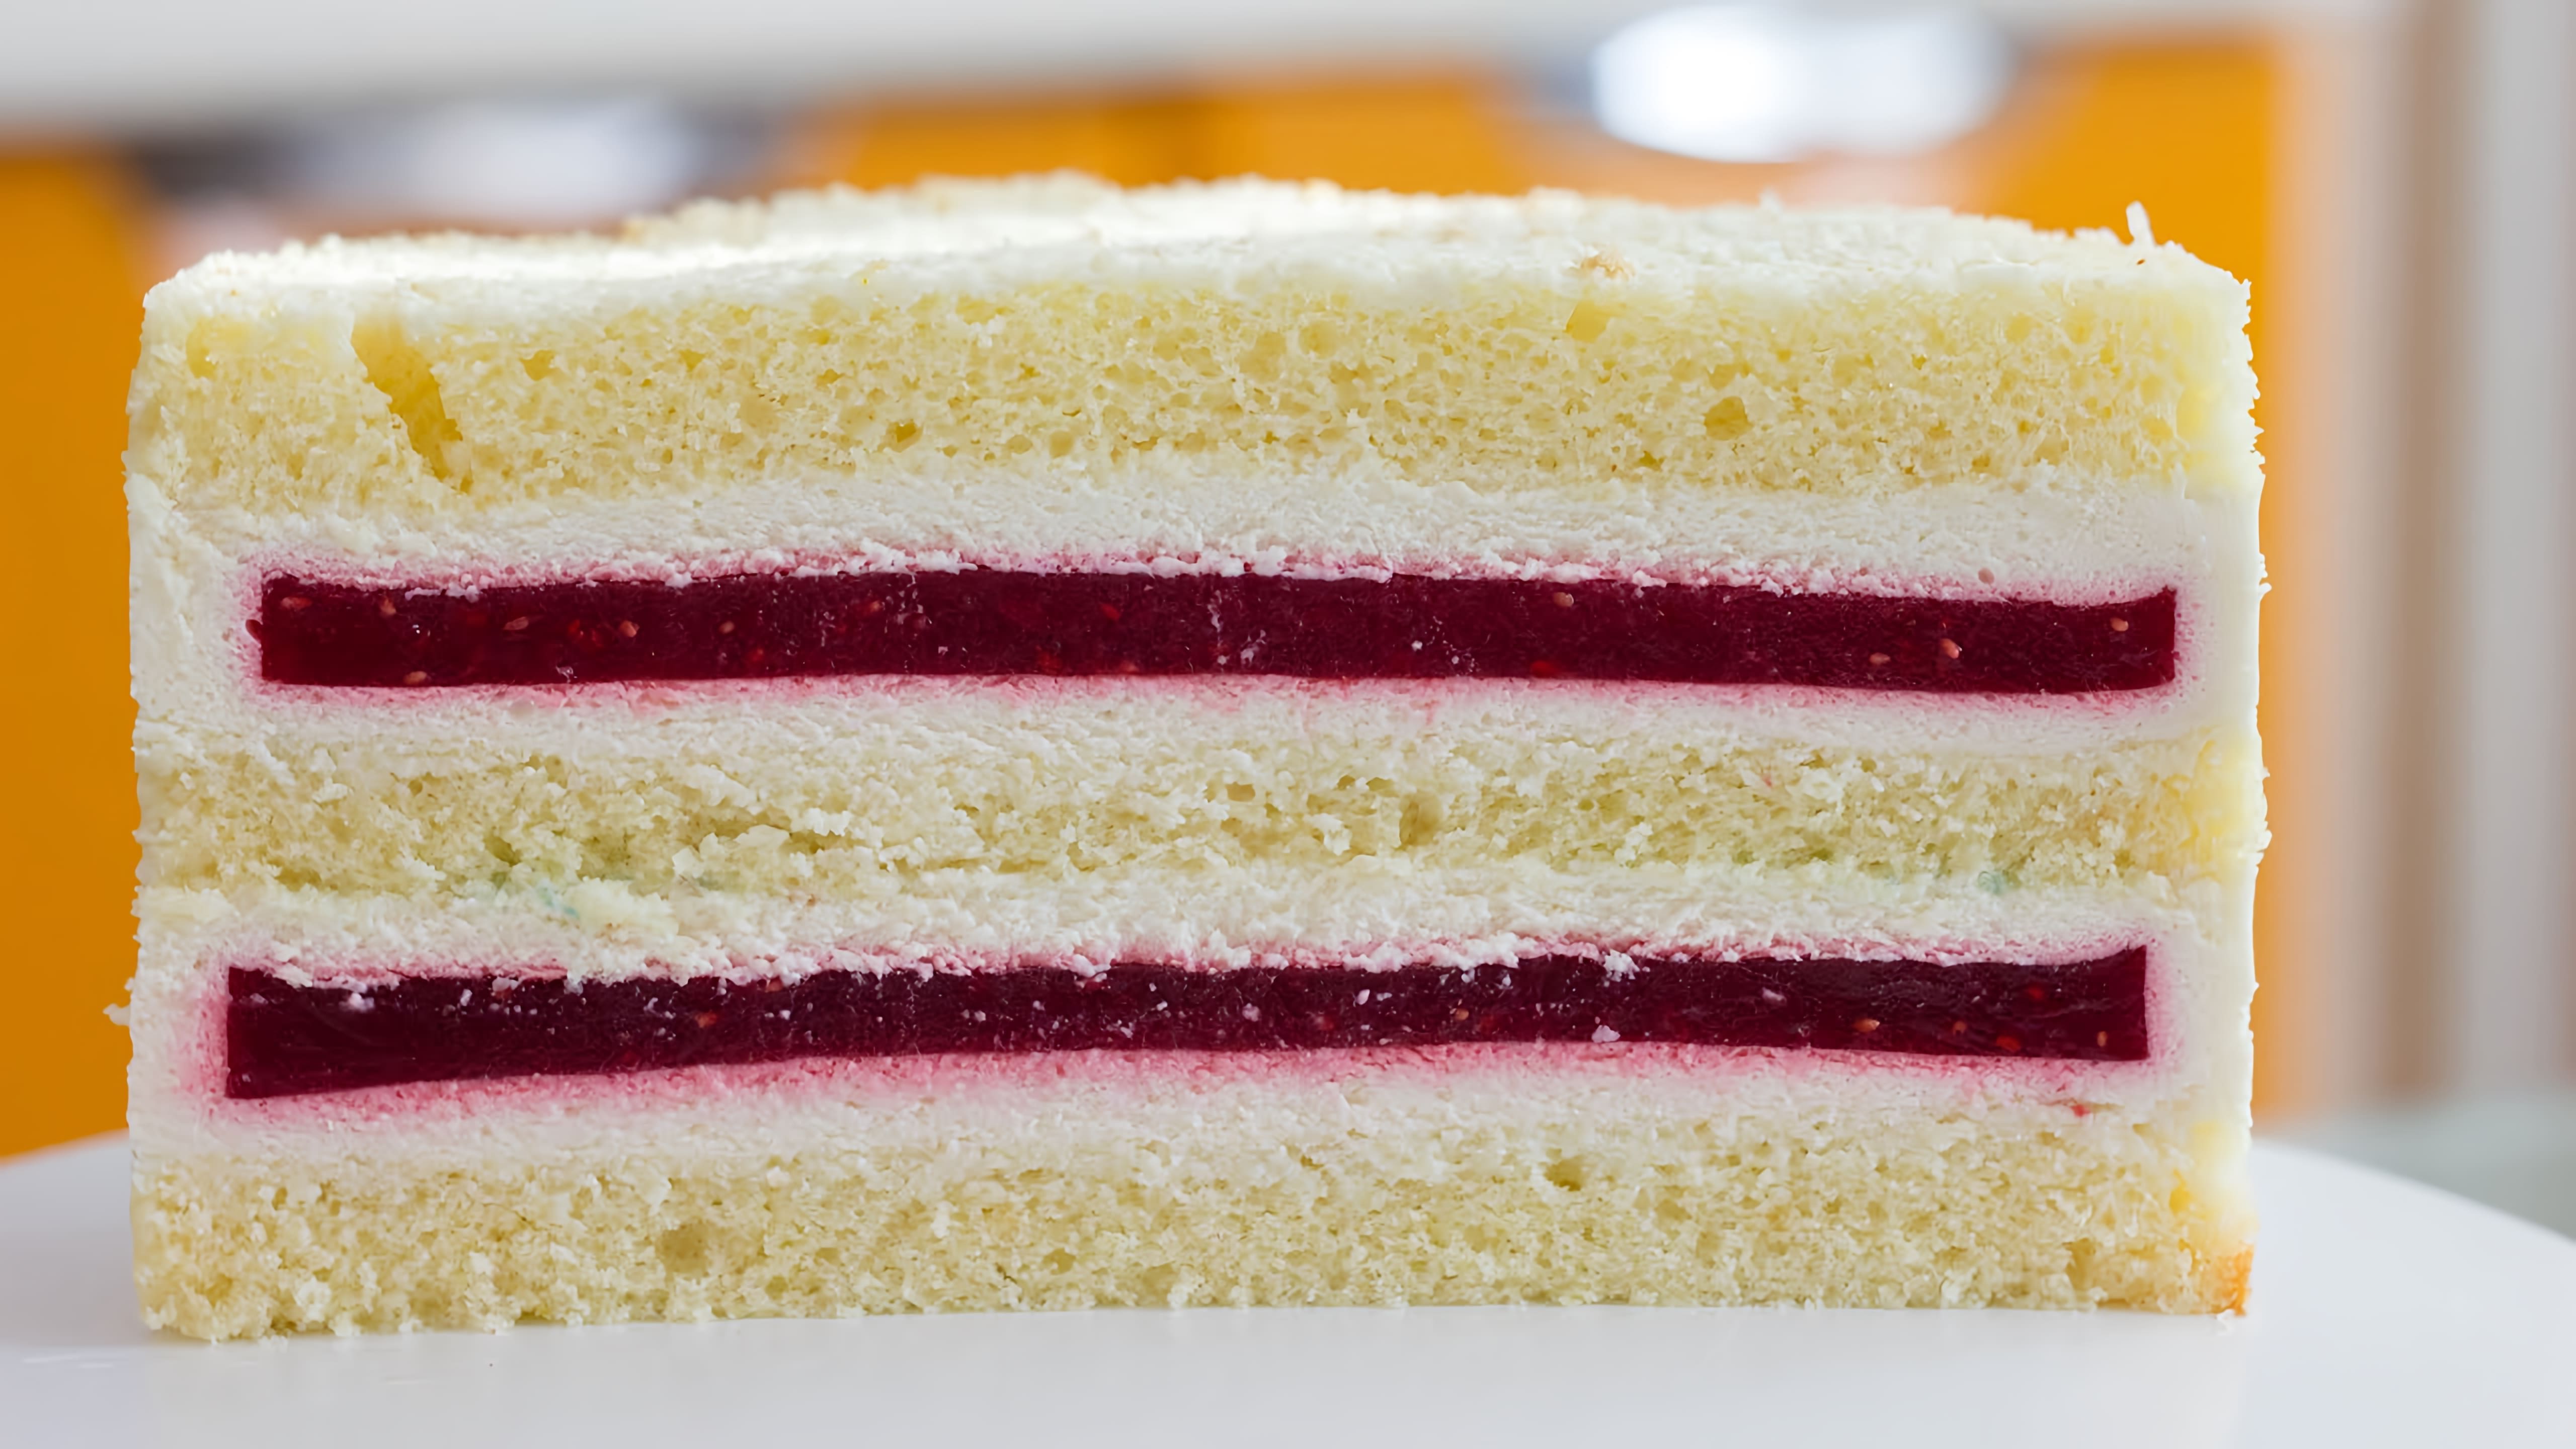 В этом видео демонстрируется рецепт торта с нежной прослойкой и ароматным бисквитом